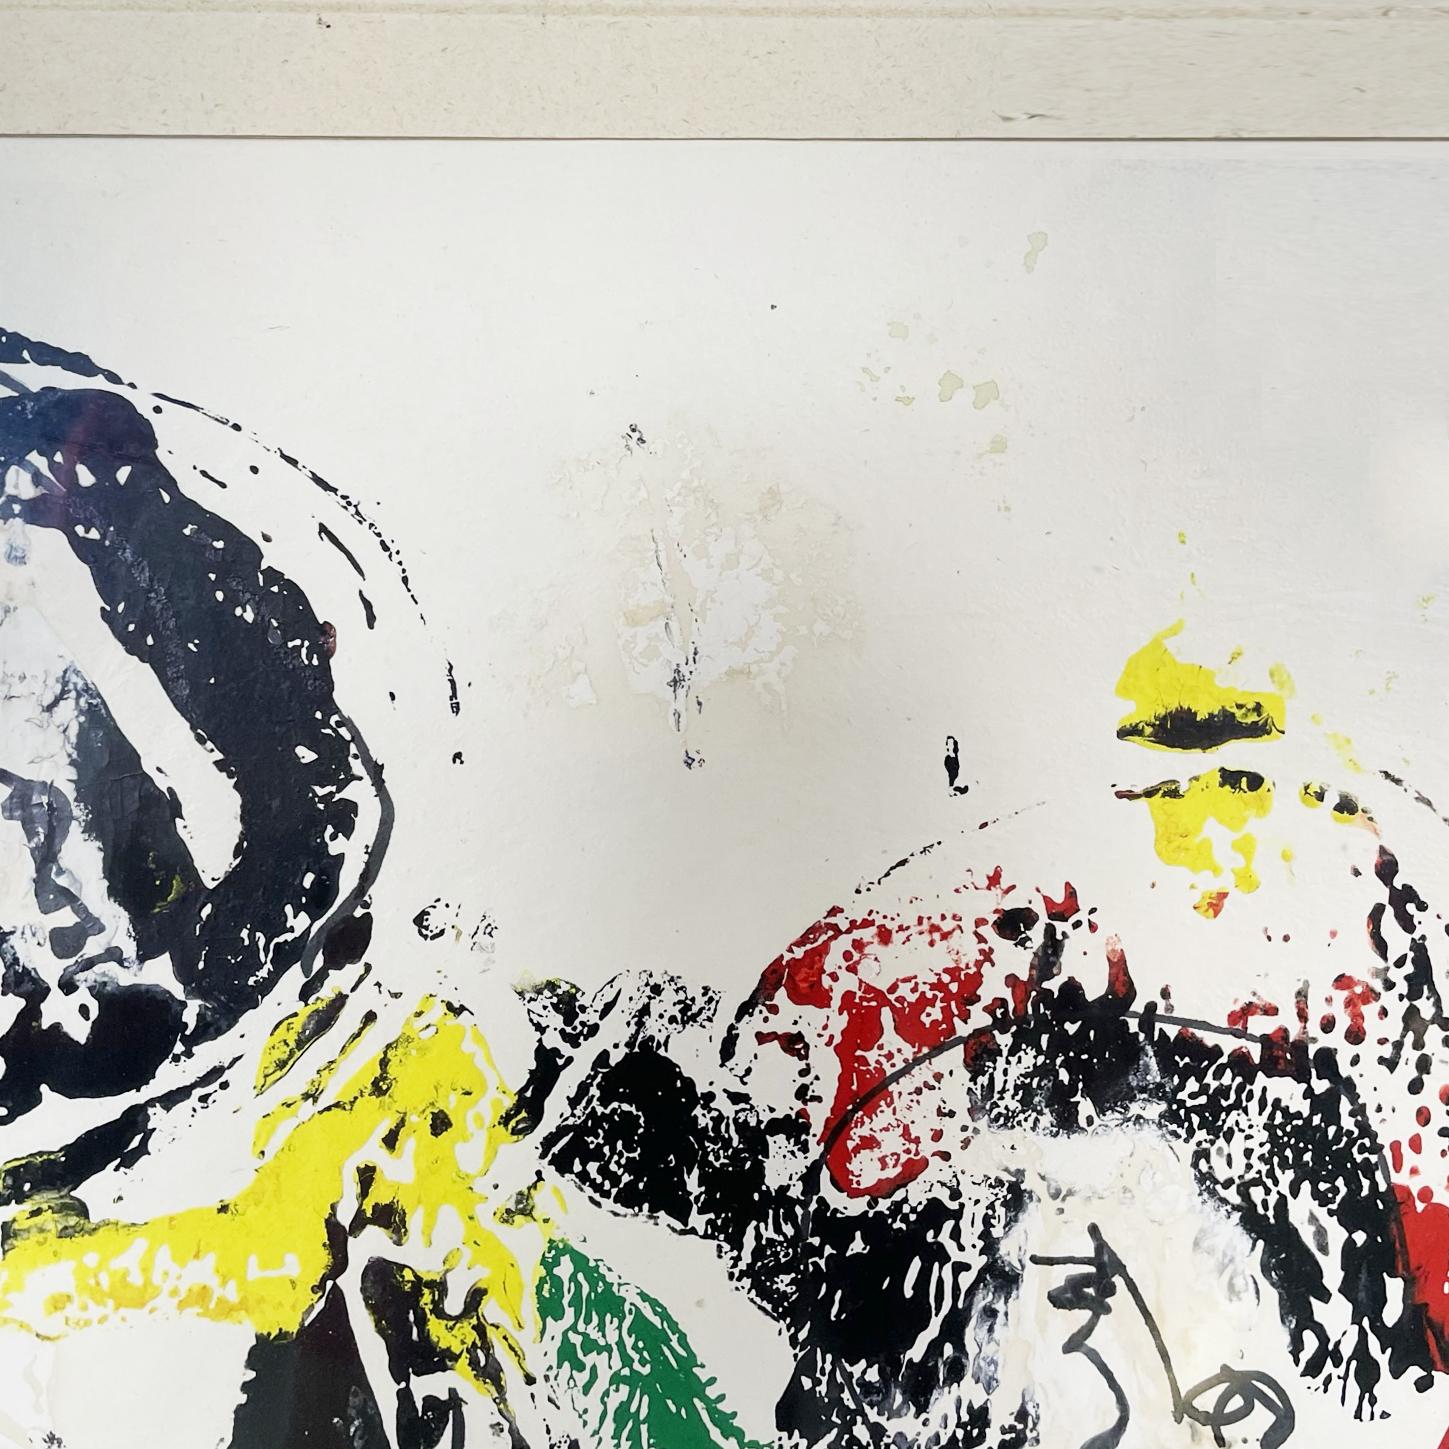 Peinture abstraite moderne italienne sur papier et cadre métallique, 1972
Peinture de style abstrait sur papier. La peinture gestuelle est caractérisée par des lignes arrondies et les couleurs noir, rouge, jaune et blanc. En passe-partout de papier